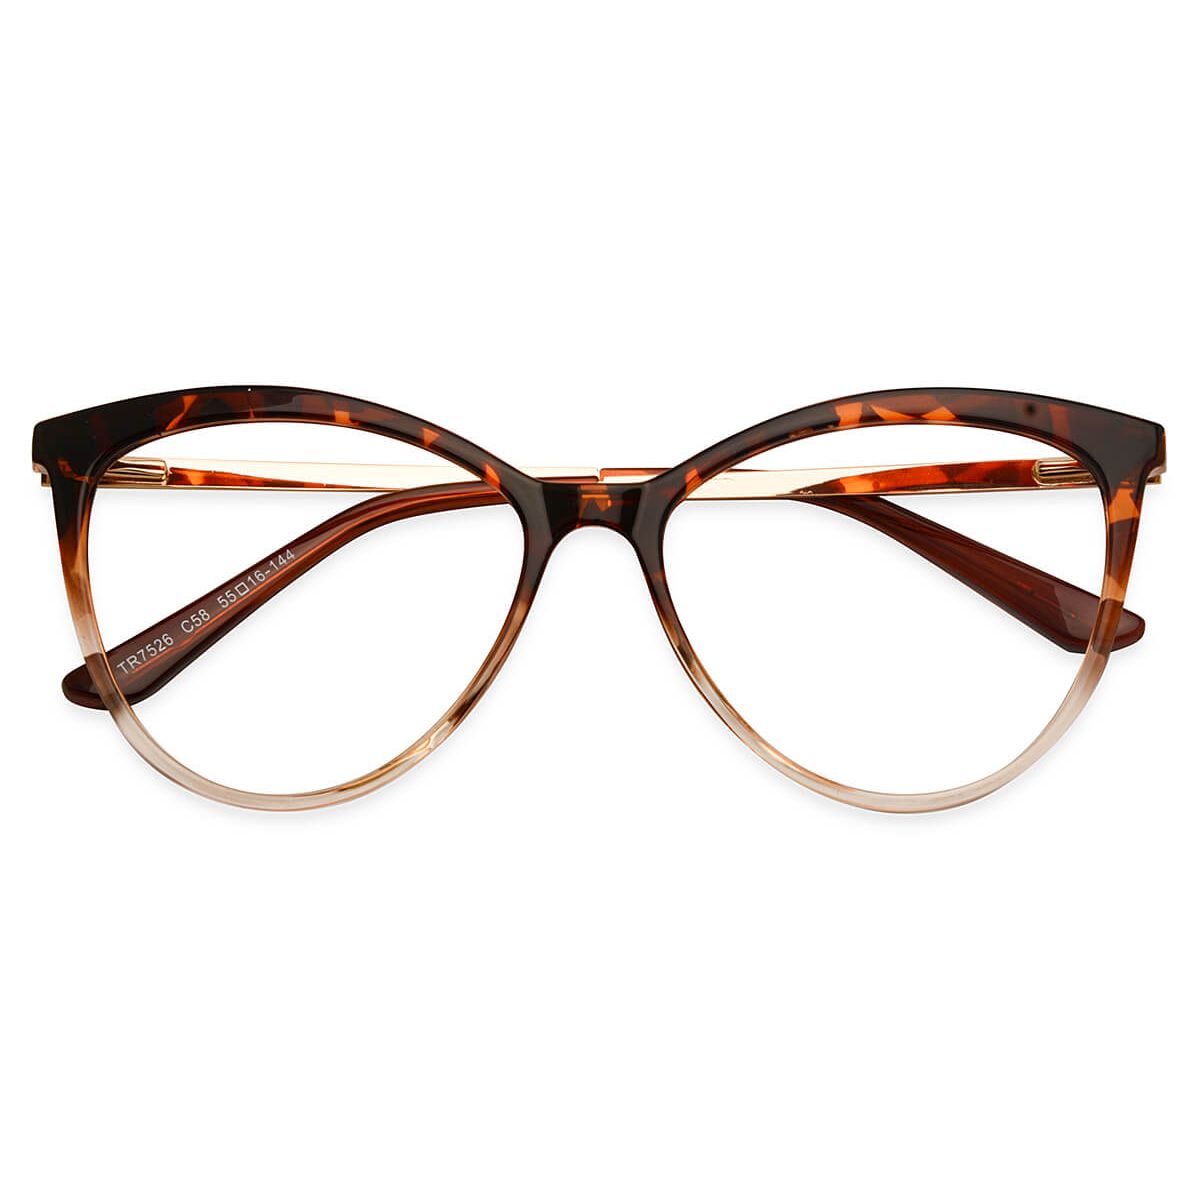 TR7526 Cat-eye Tortoise Eyeglasses Frames | Leoptique